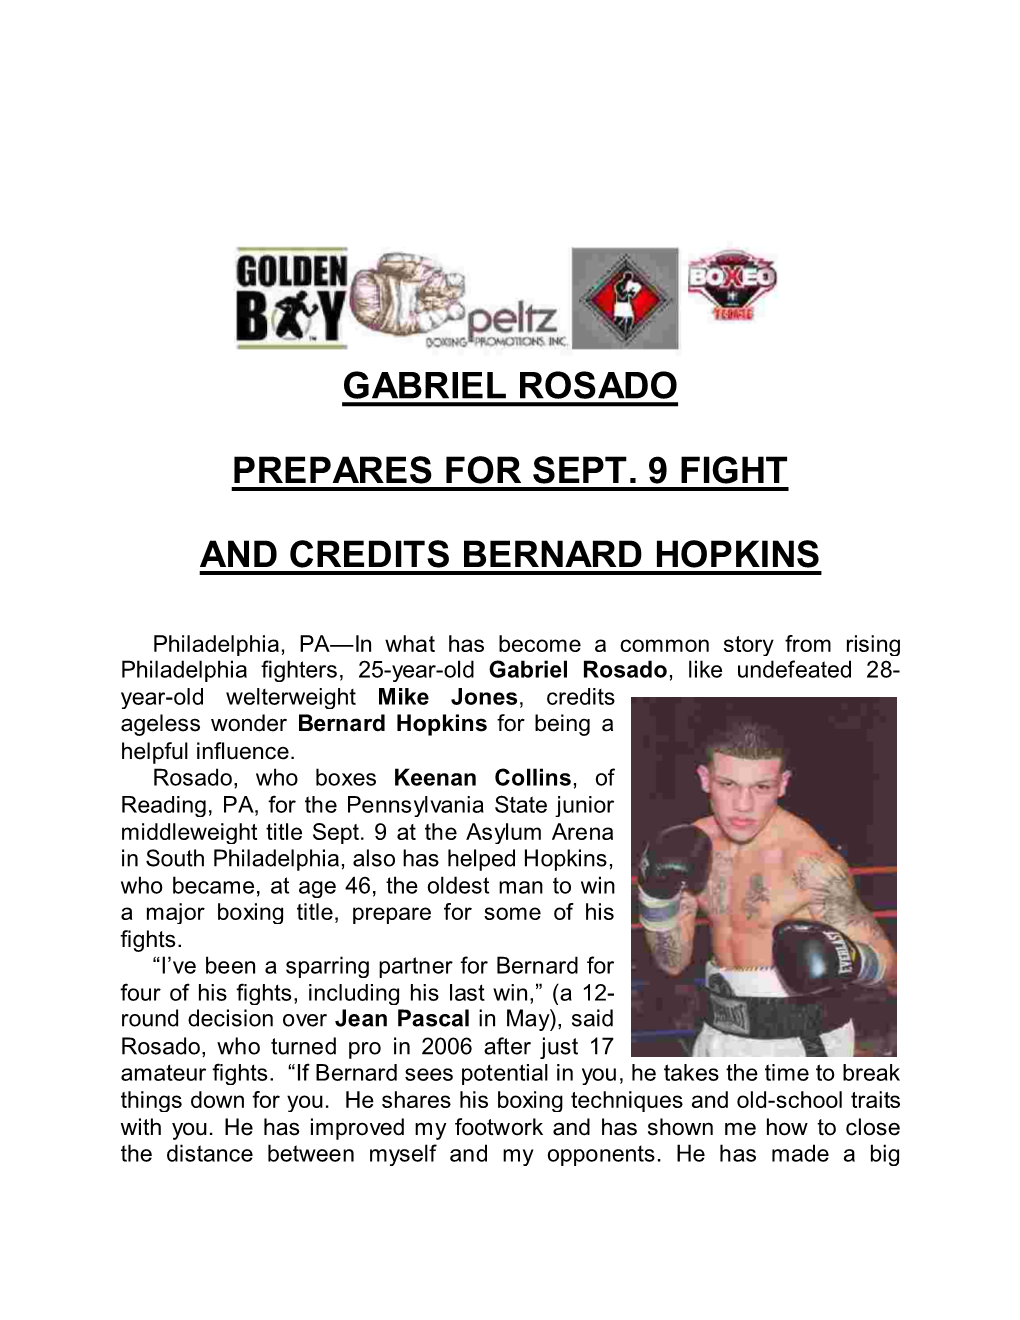 Gabriel Rosado Prepares for Sept. 9 Fight And